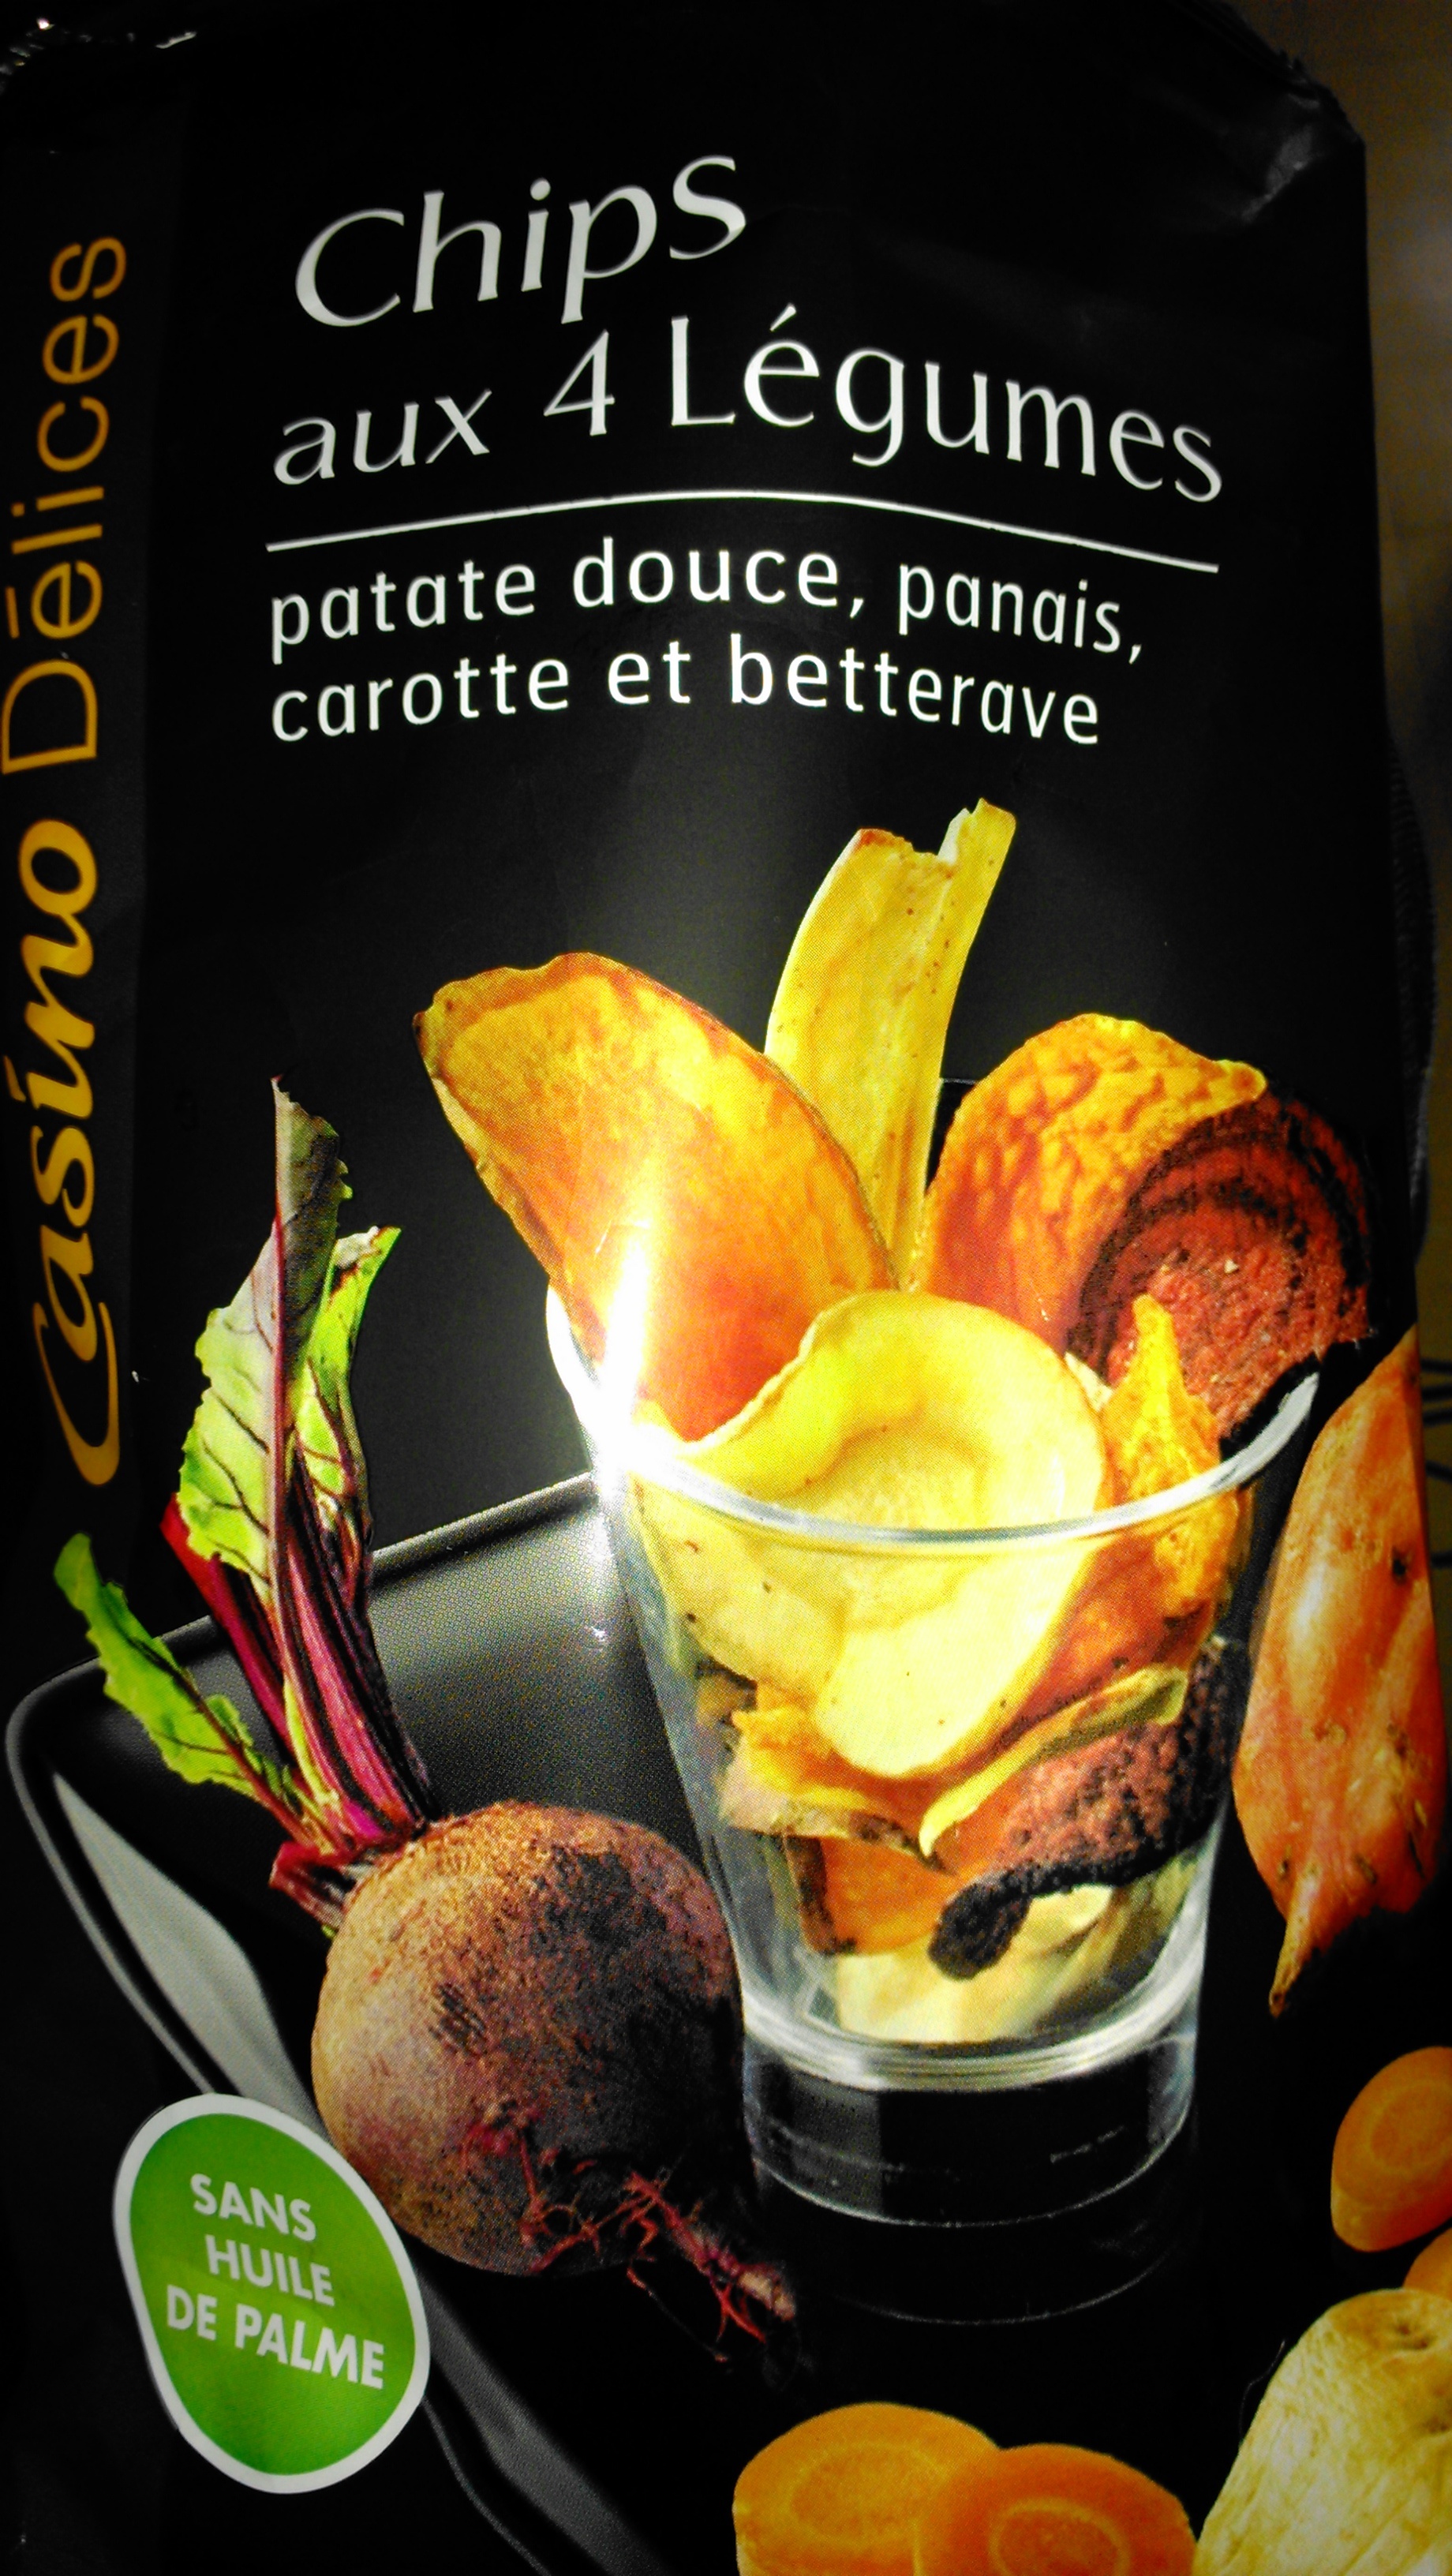 Chips aux 4 Légumes - Product - fr